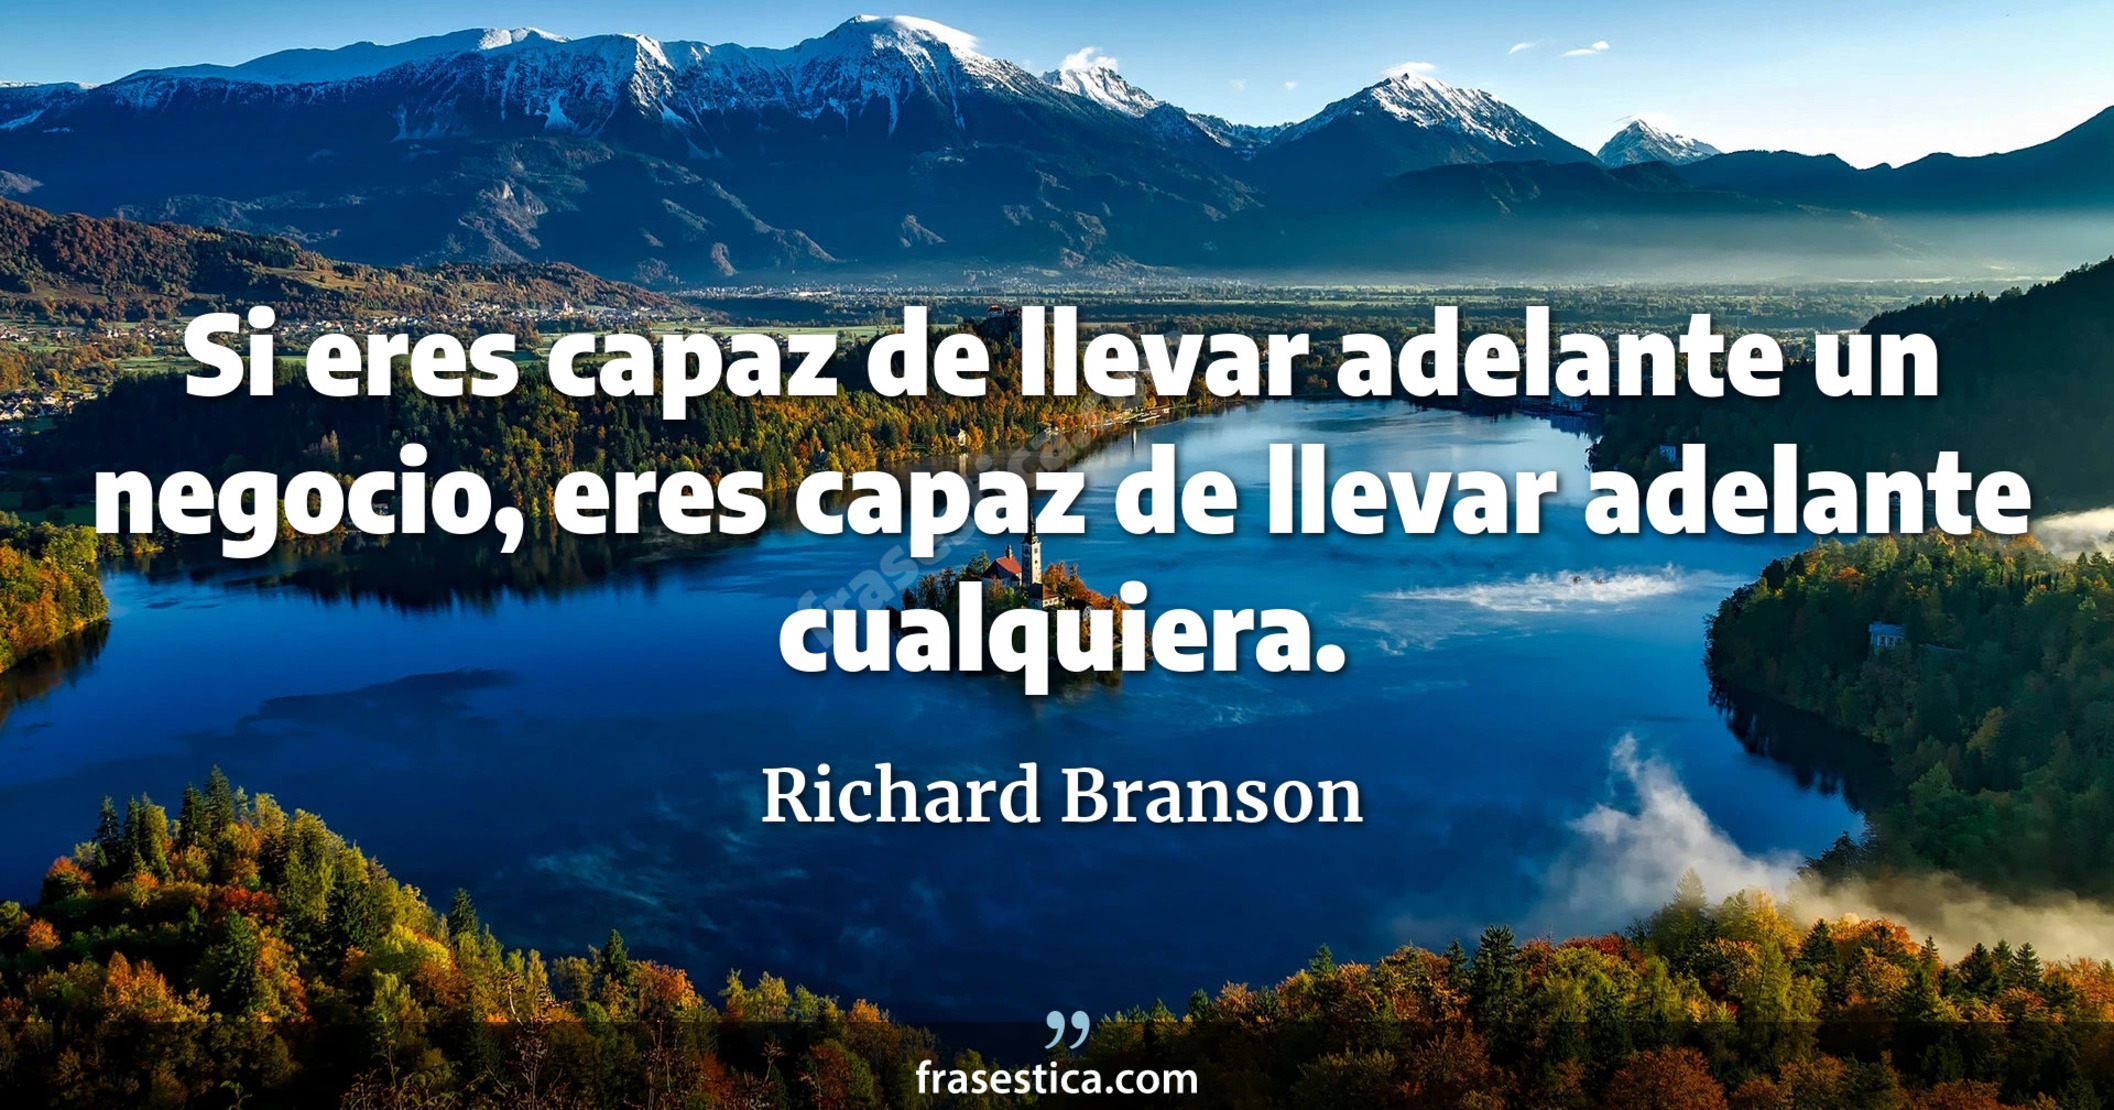 Si eres capaz de llevar adelante un negocio, eres capaz de llevar adelante cualquiera. - Richard Branson